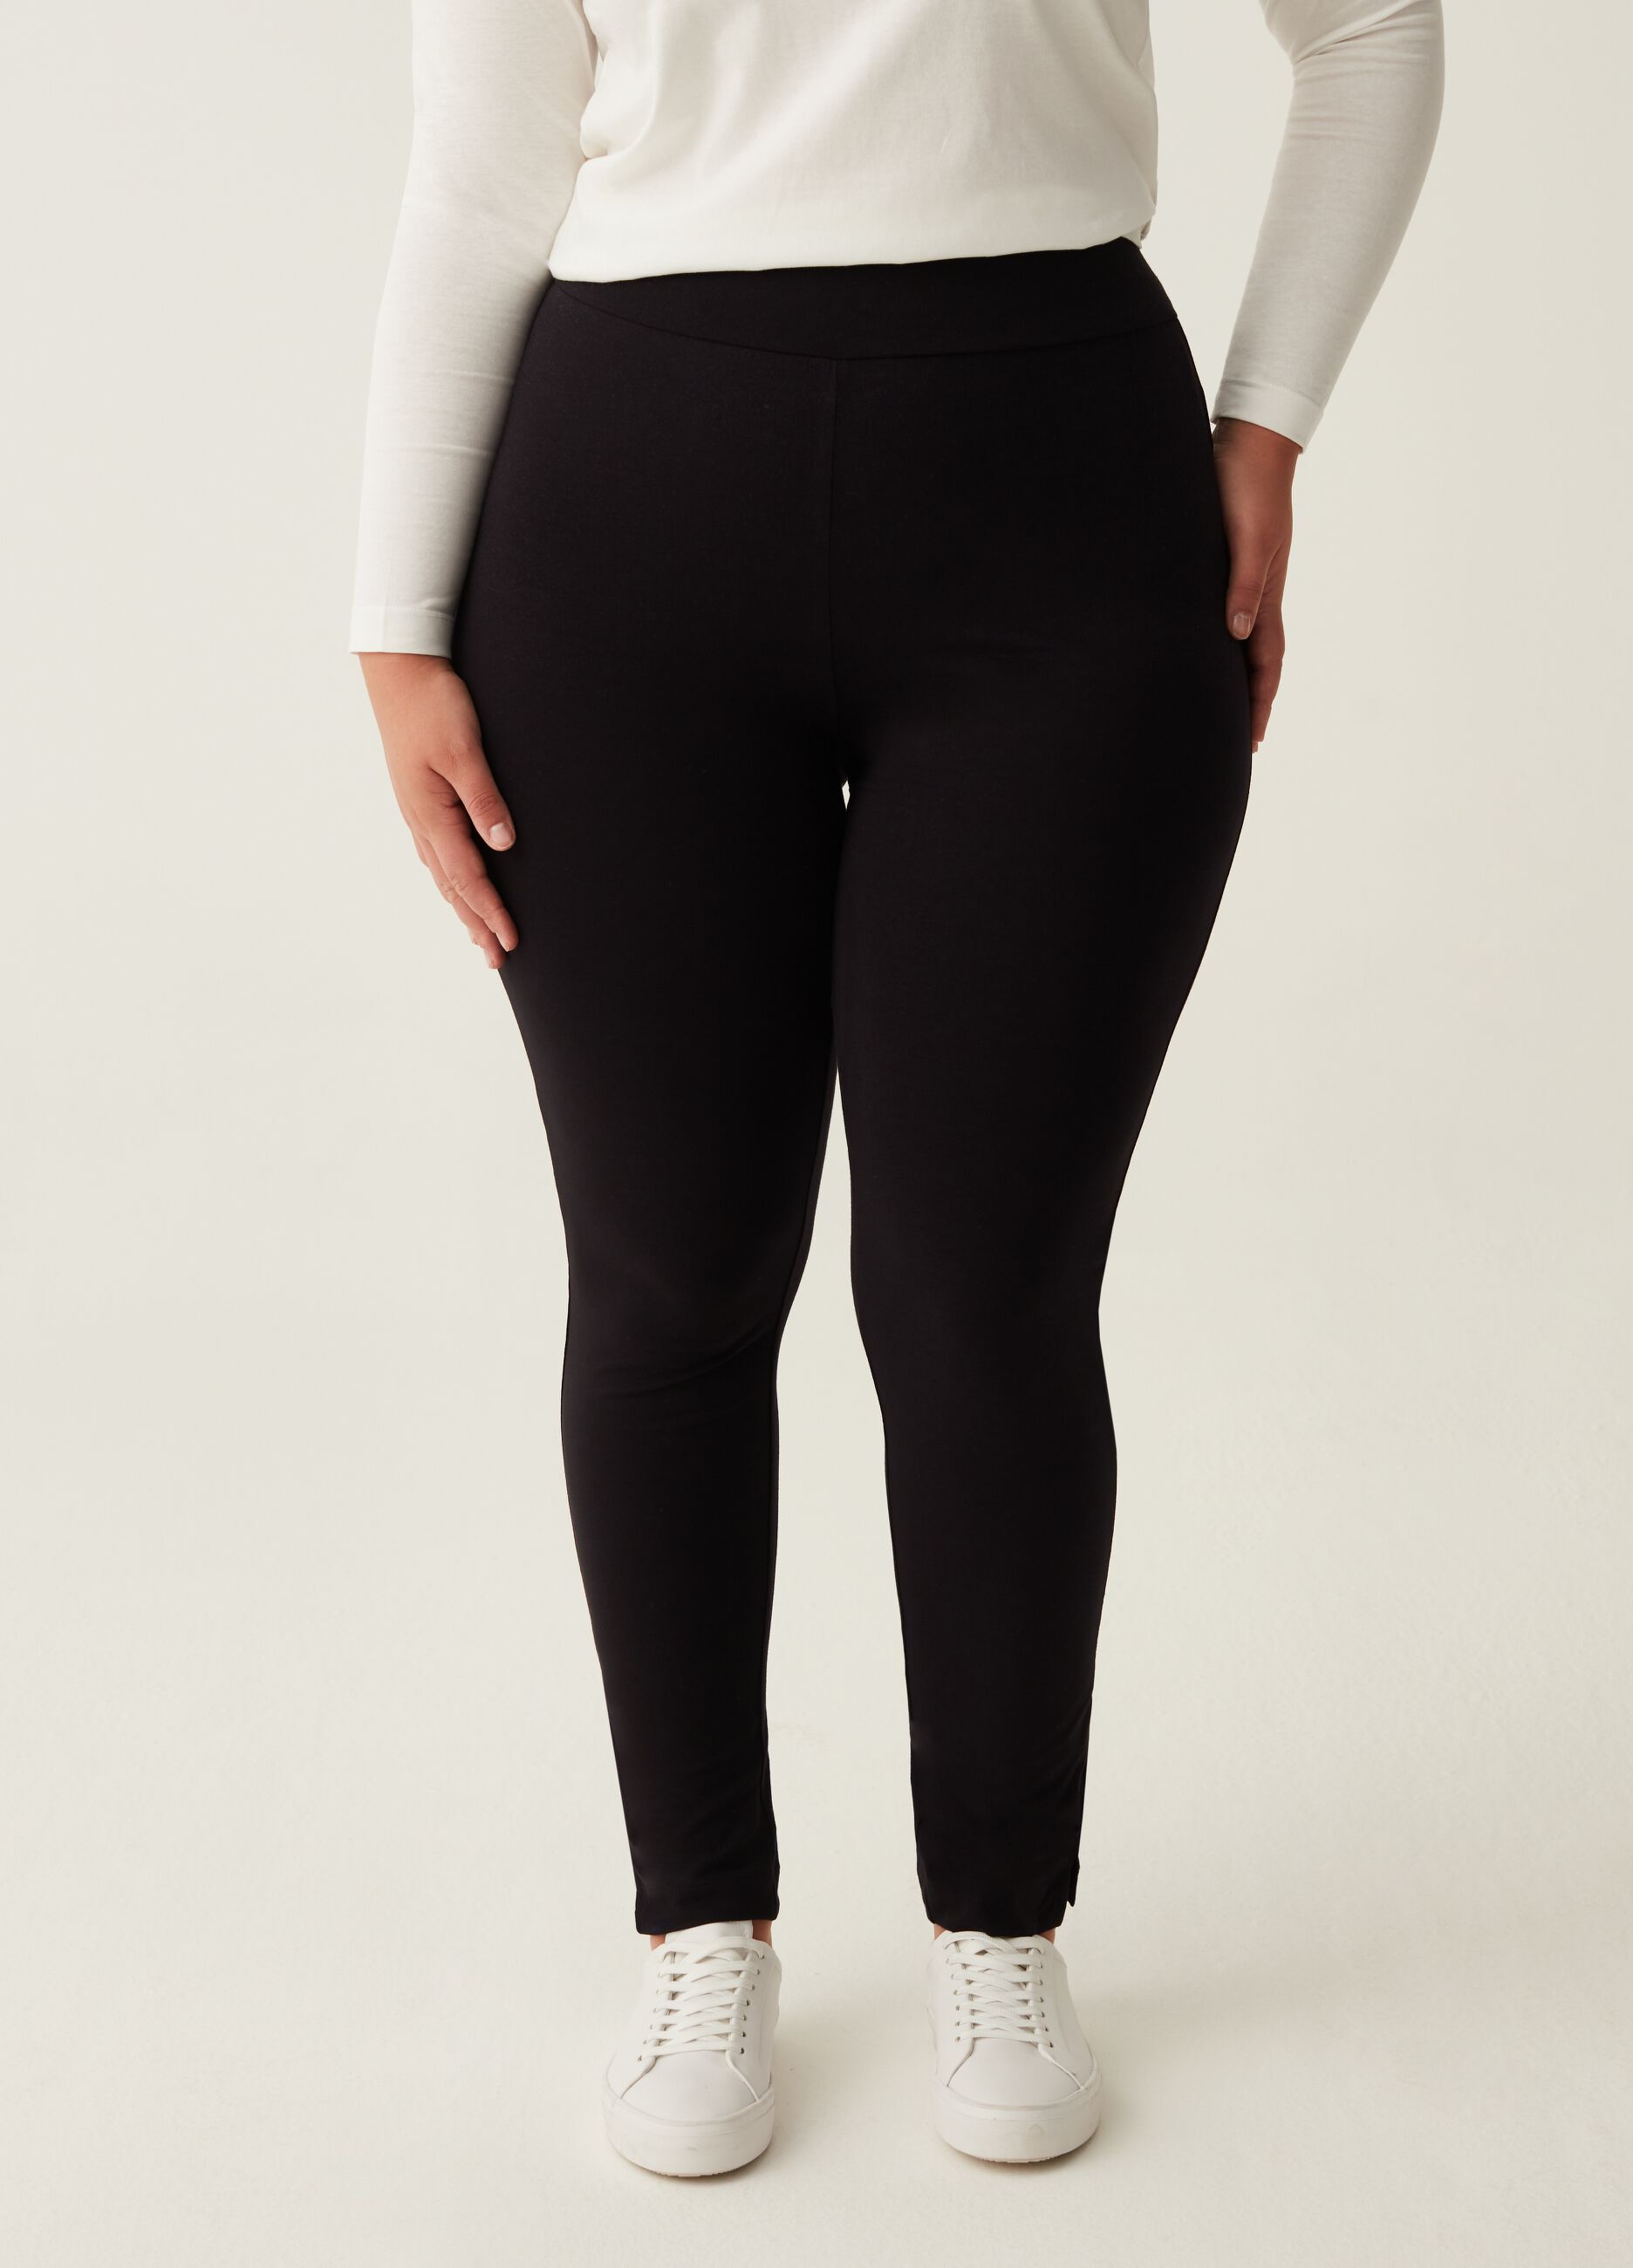 MYA Woman's Black Curvy stretch leggings with splits